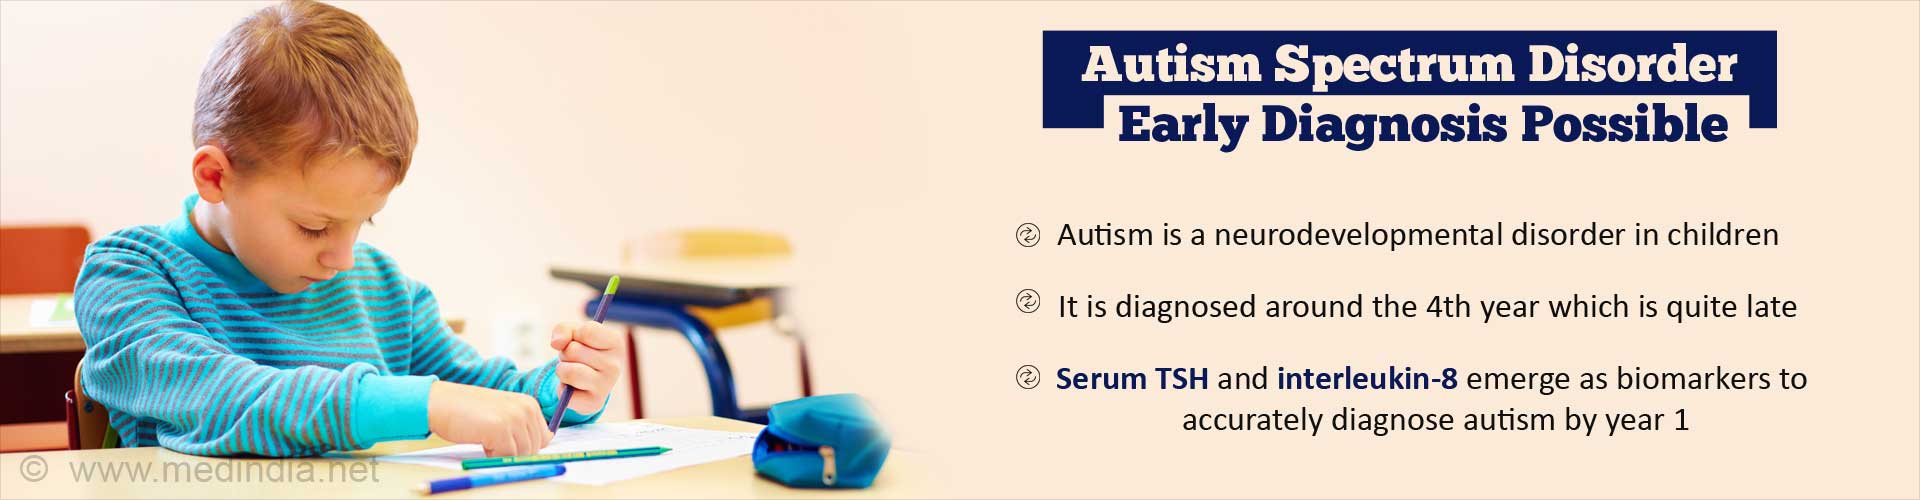 自闭症谱系障碍可能早期诊断——自闭症是儿童的一种神经发育障碍——大约在第4年被诊断出来，这已经相当晚了——血清TSH和白细胞介素-8作为生物标志物出现，可以在第1年准确诊断